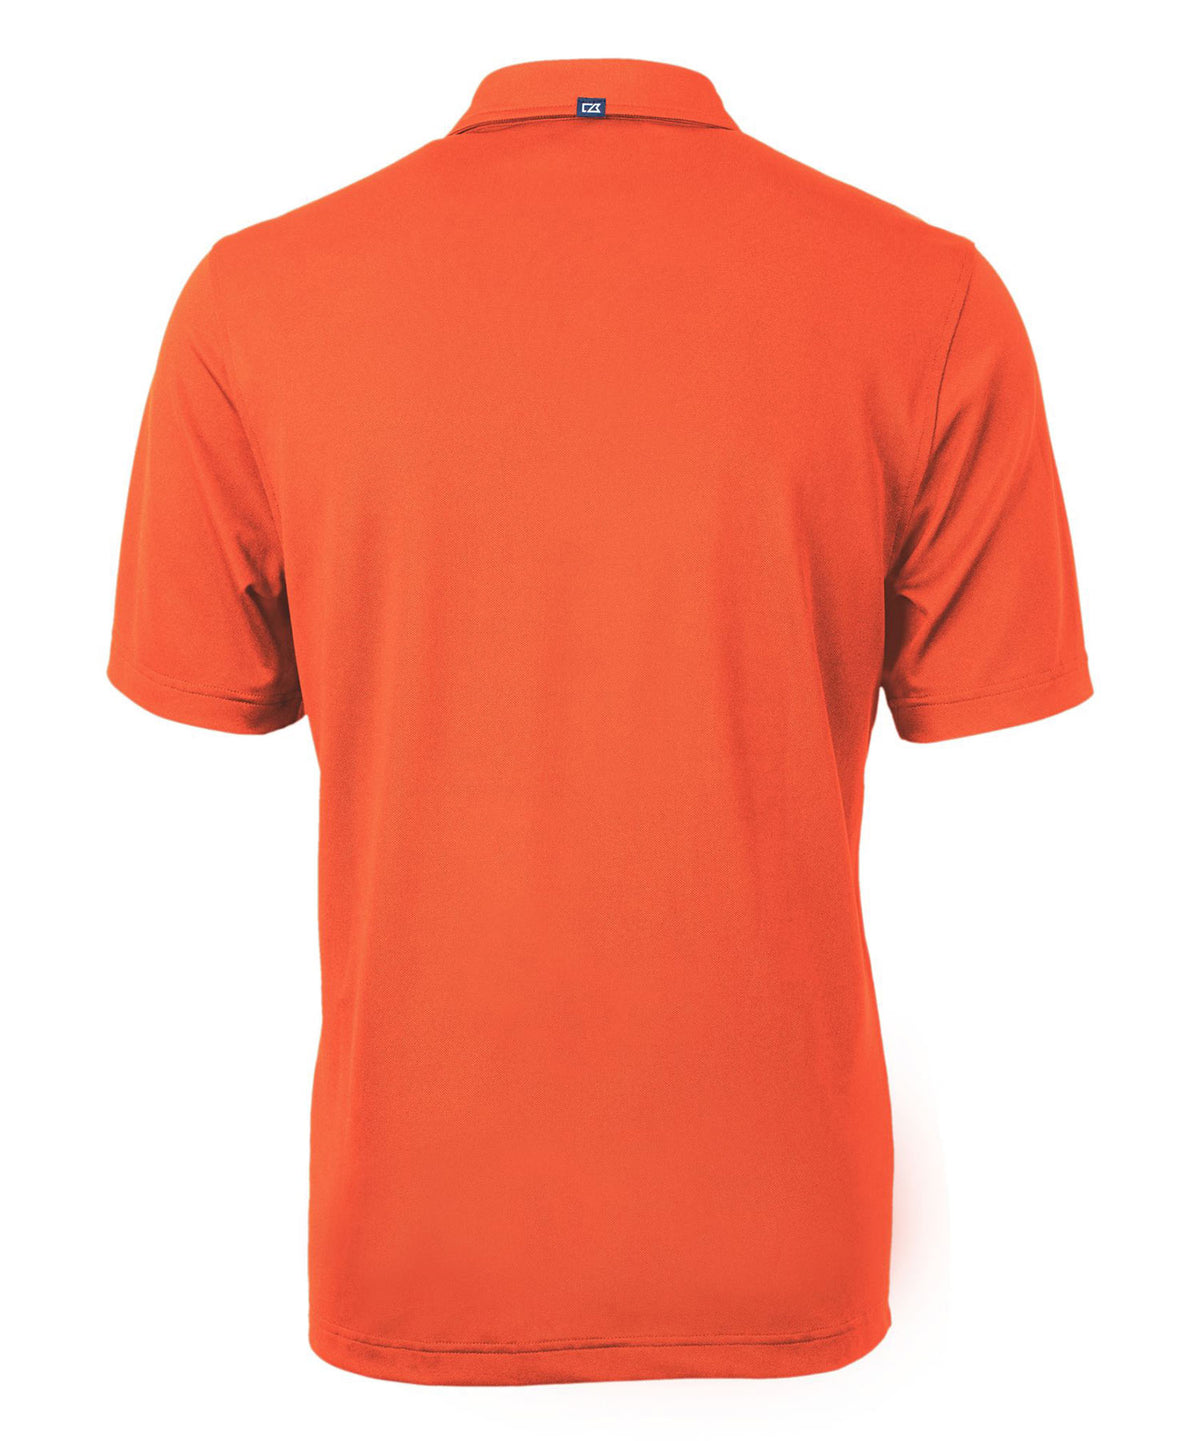 Cutter & Buck Clemson University Tigers Short Sleeve Polo Knit Shirt, Men's Big & Tall